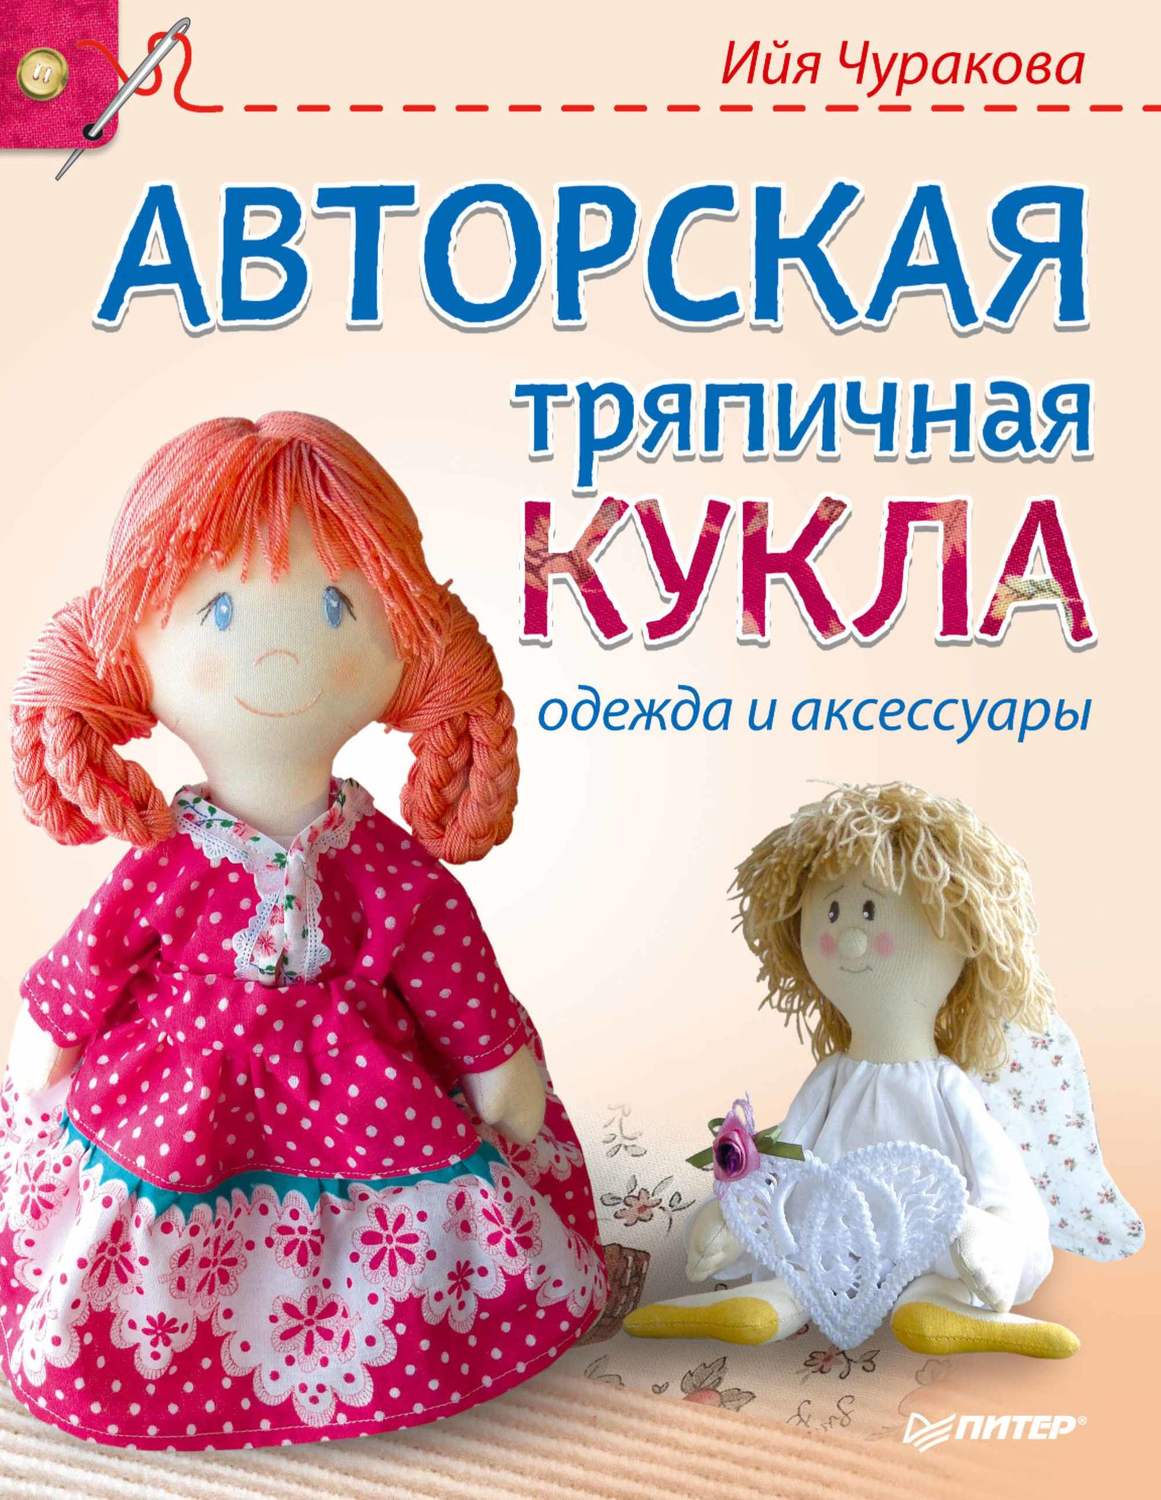 Авторская тряпичная кукла одежда и аксессуары Ийя Чуракова